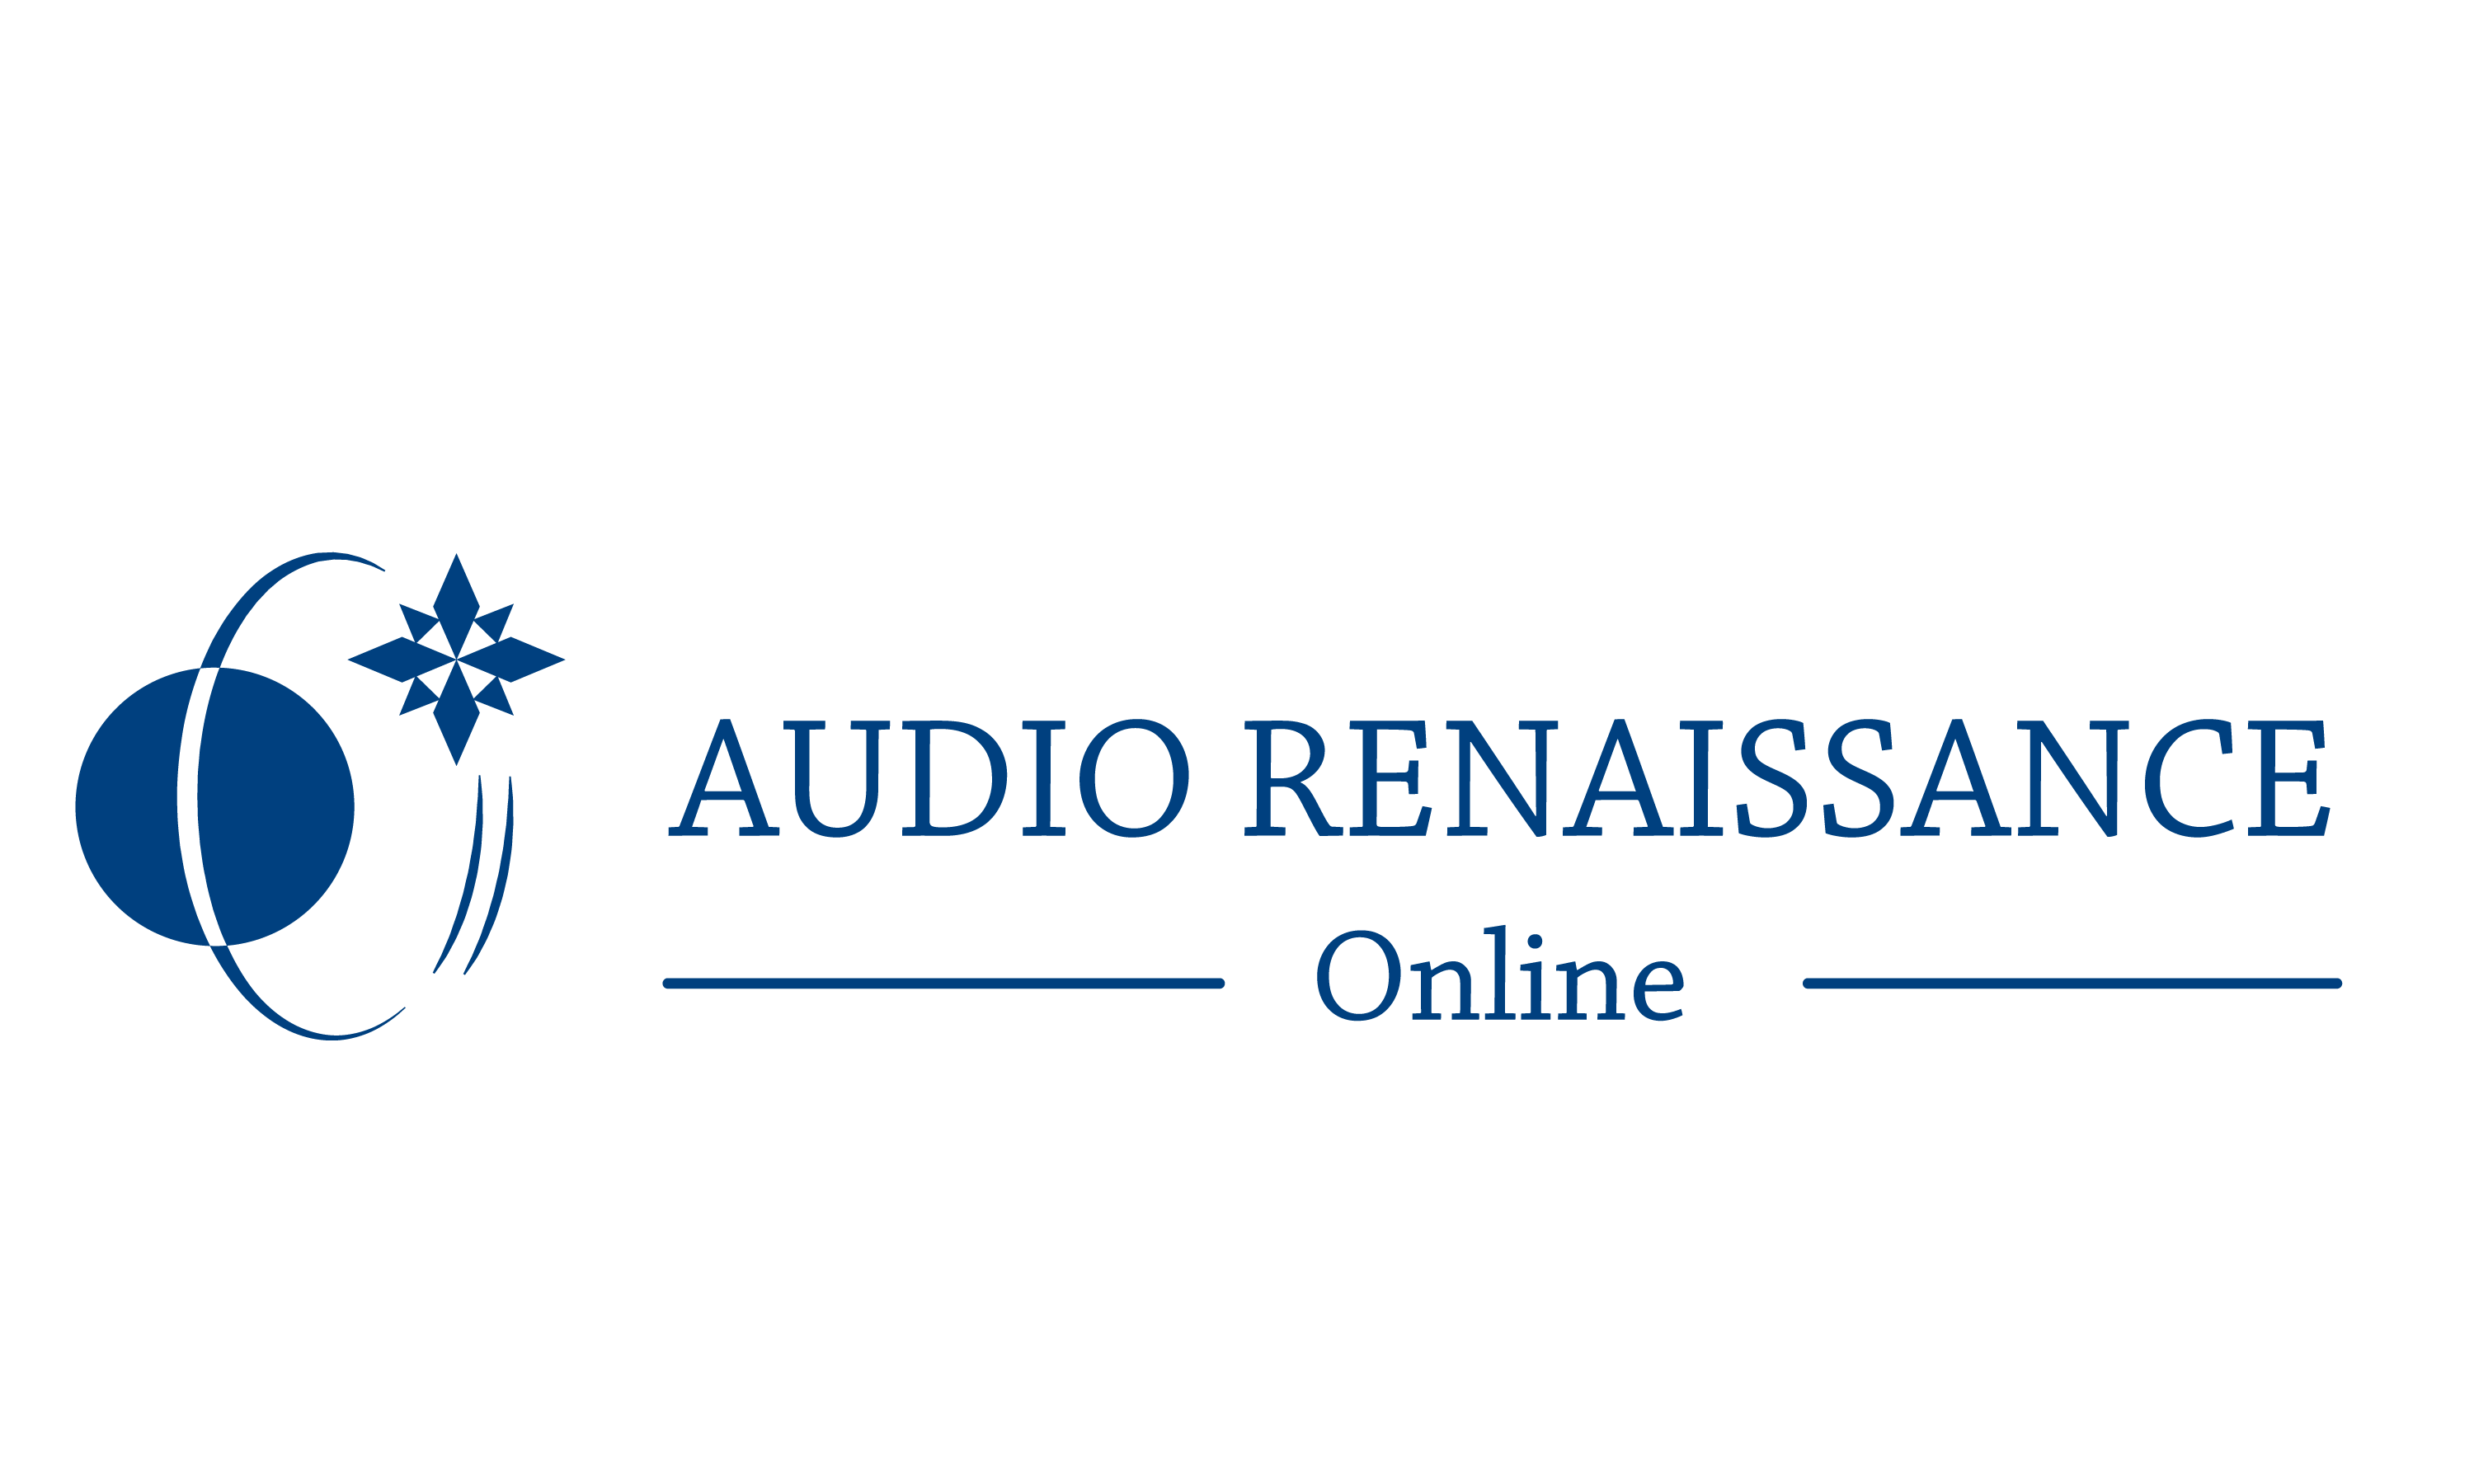 Audio Renaissance Online